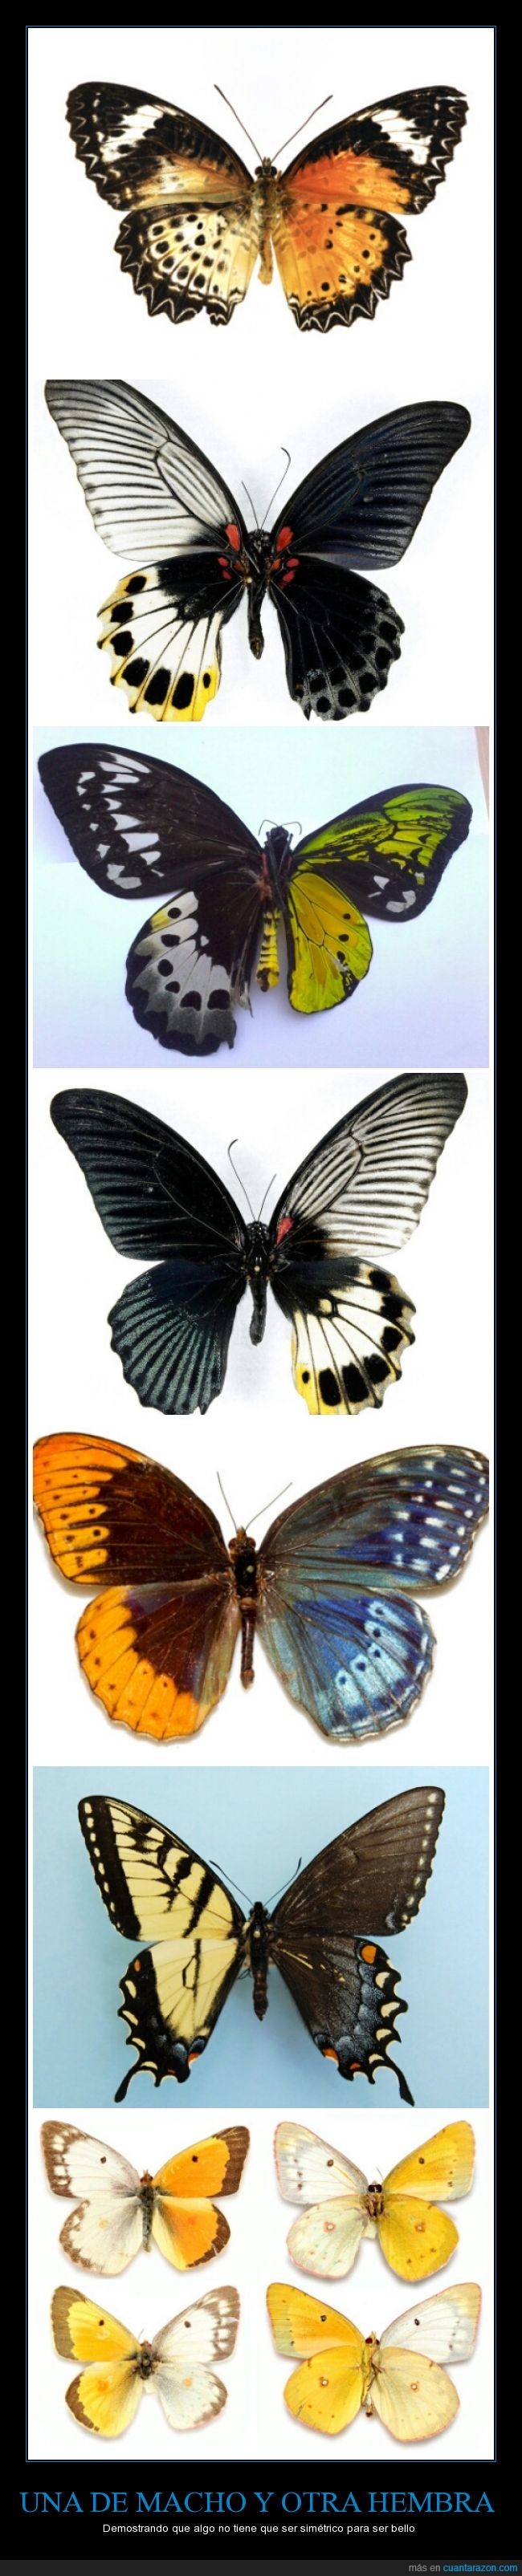 Mariposas,simétrico,simetría,alas,genéticamente inusuales,macho,hembra